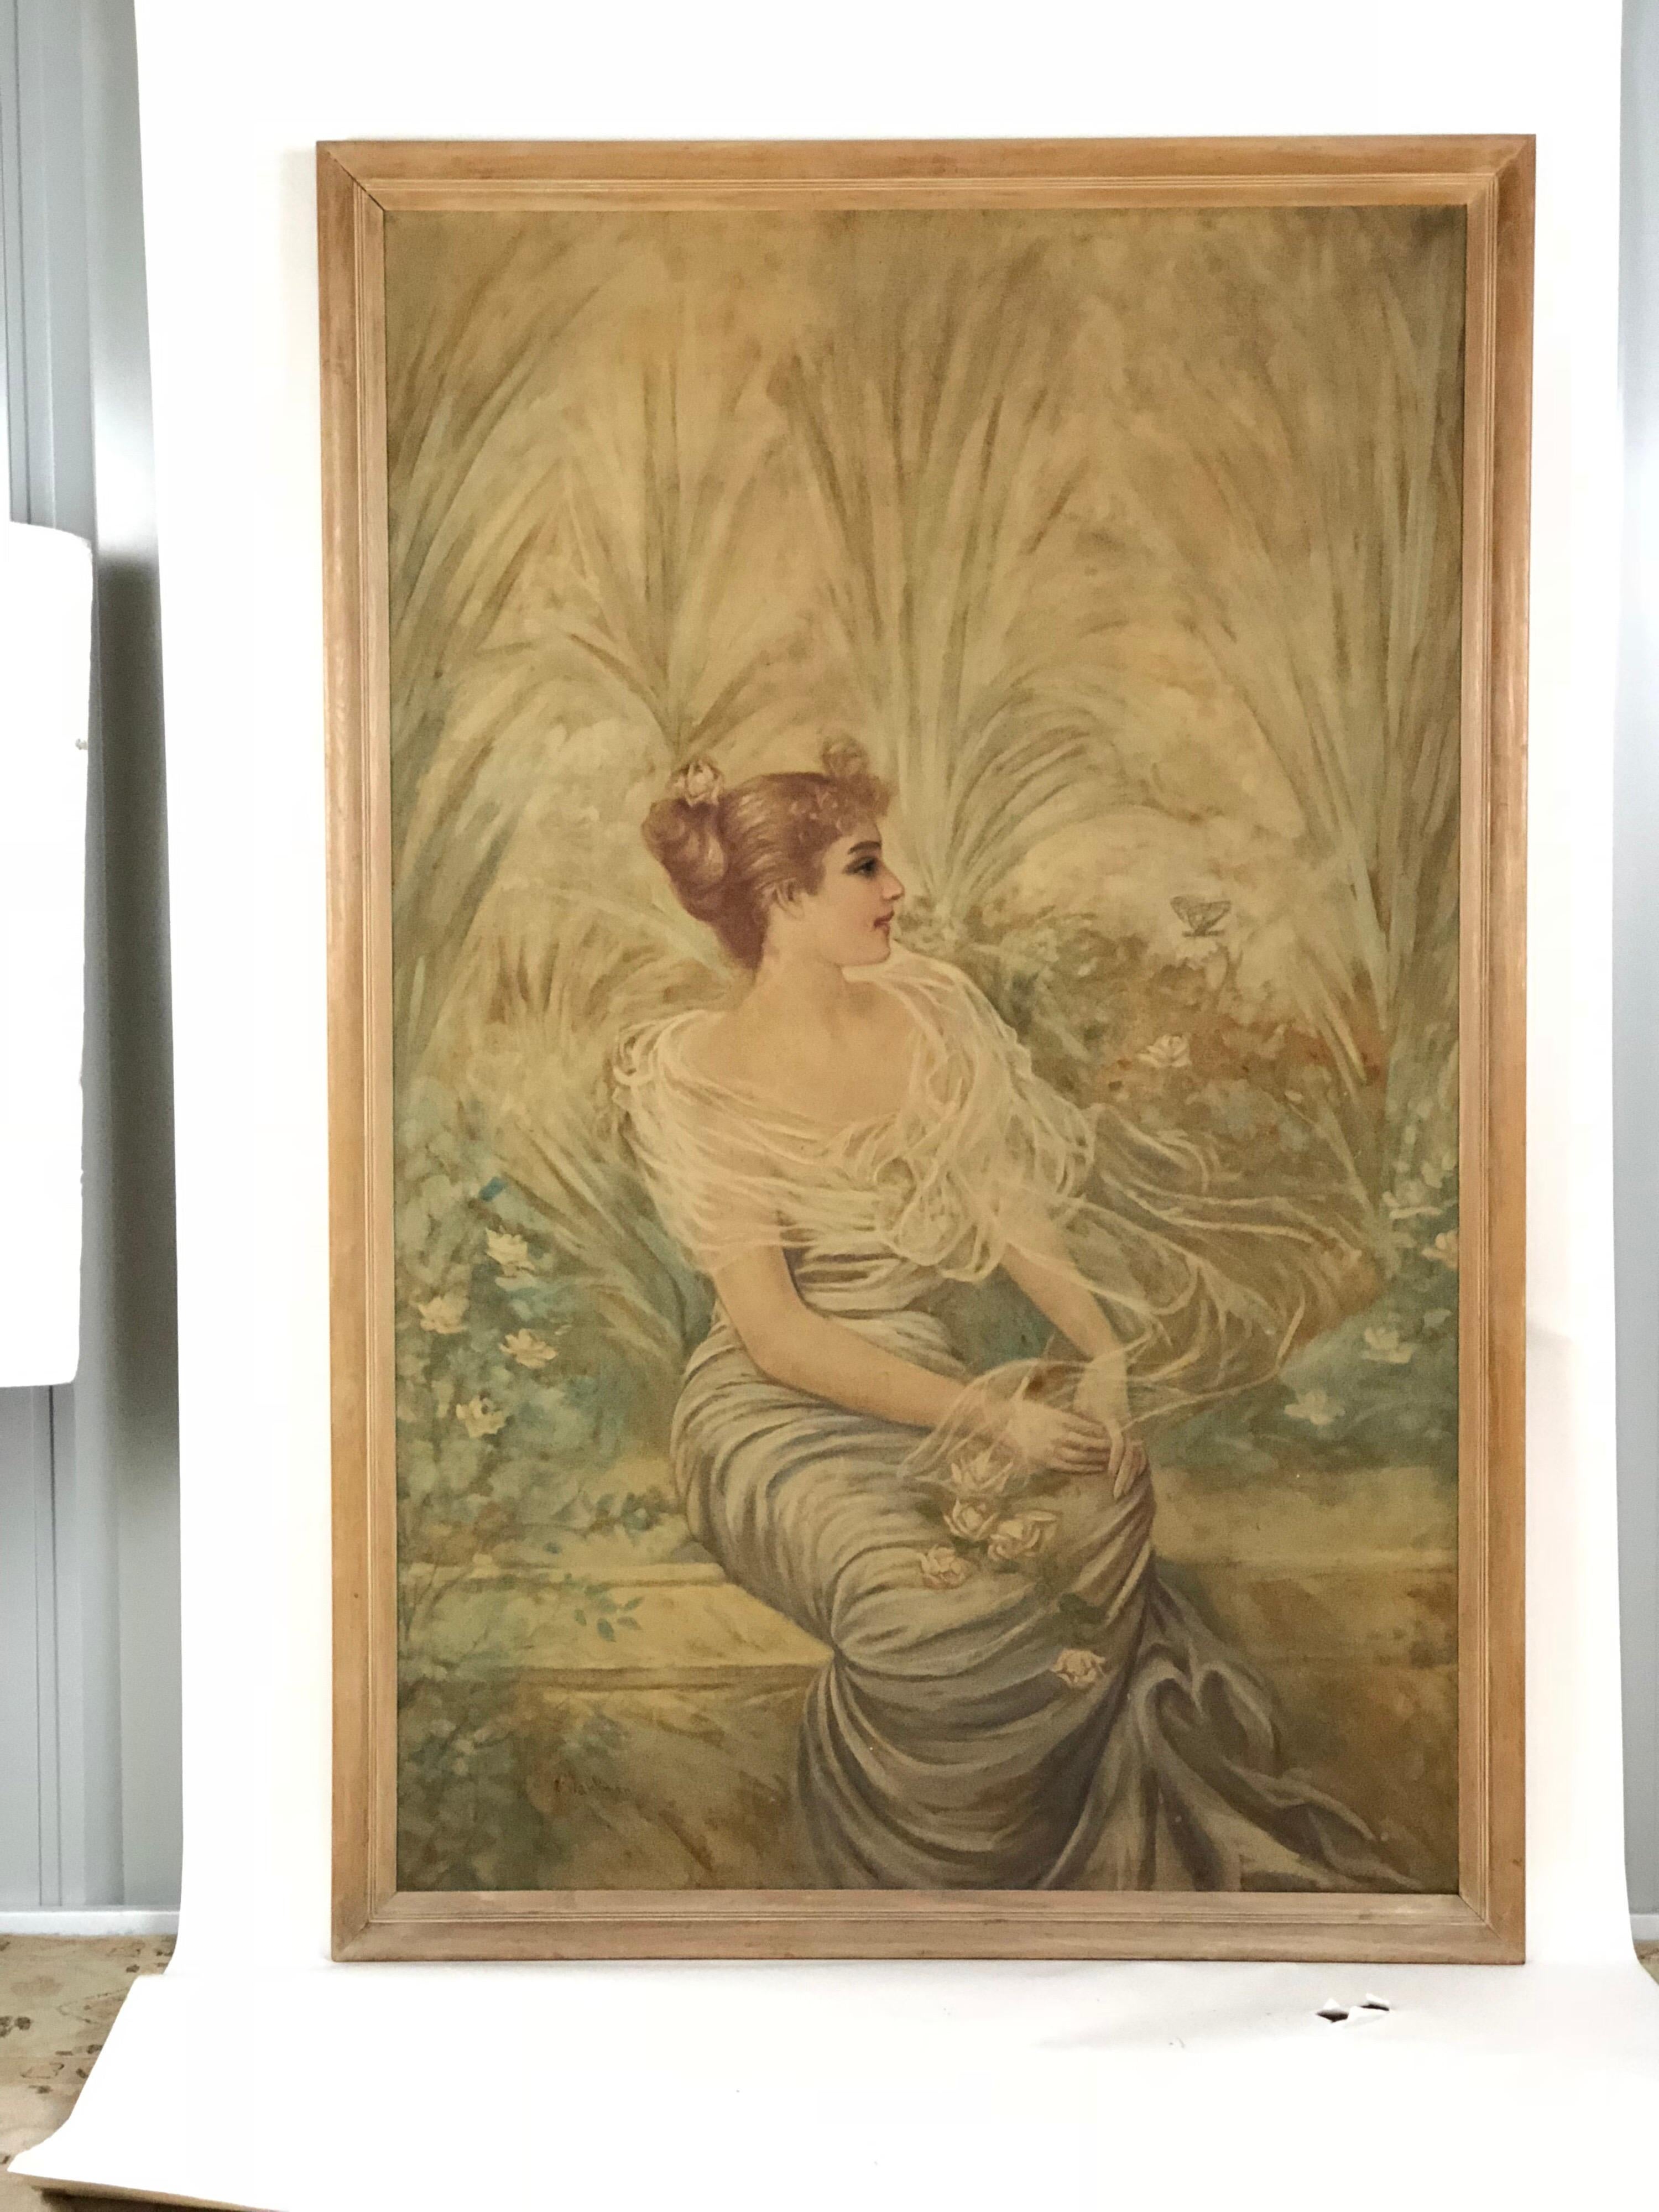 Gartenporträt einer Dame aus dem späten 19. oder frühen 20. Jahrhundert, gemalt in der Zeit des Jugendstils. Stilisierte Palmen dienen als elegante Kulisse für eine sitzende Erbin, die in zarten Pastellfarben gemalt und von Pflanzen umgeben ist. Das